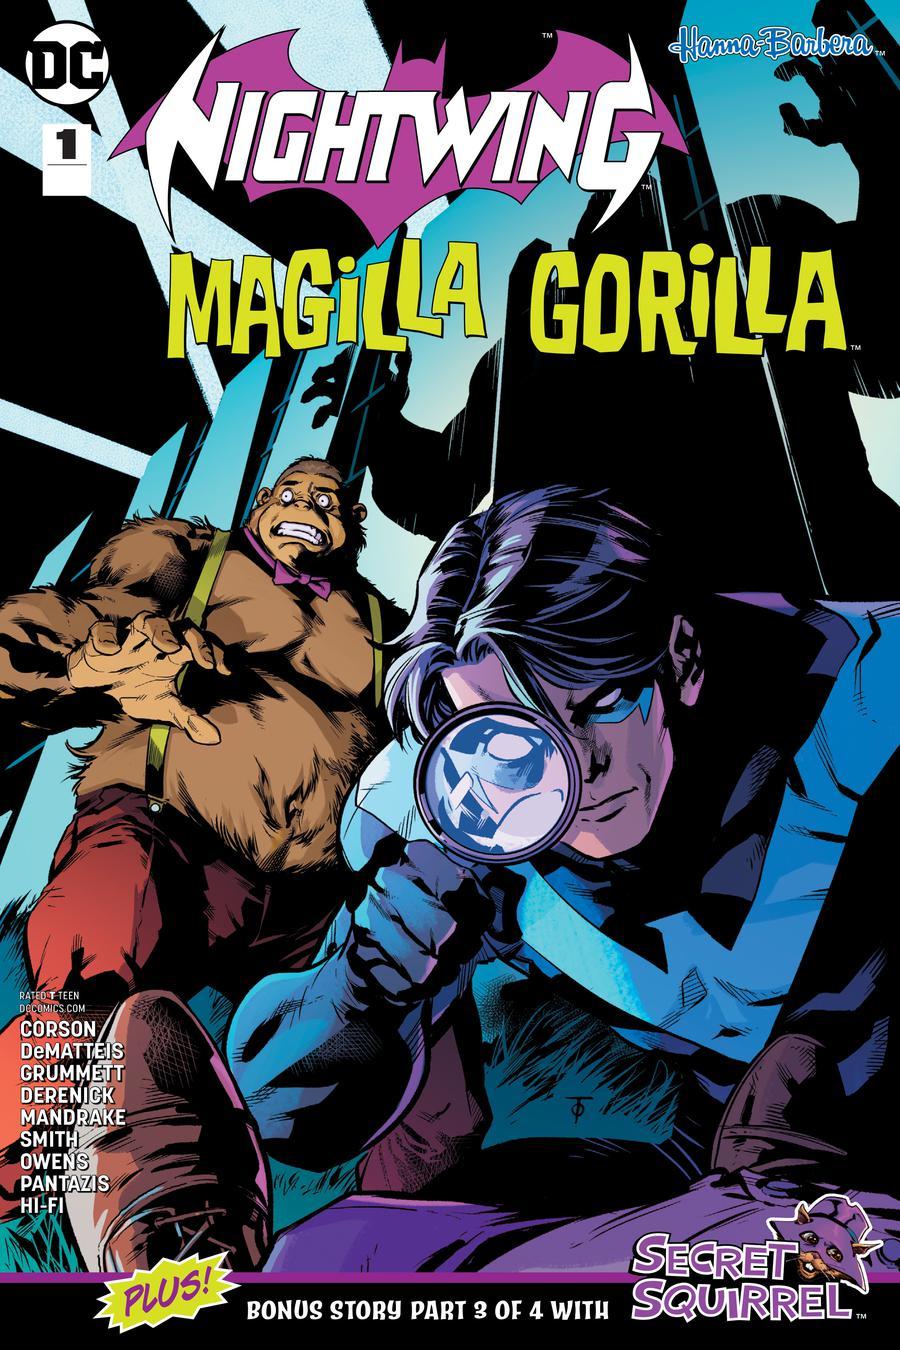 Nightwing Magilla Gorilla Special Vol. 1 #1